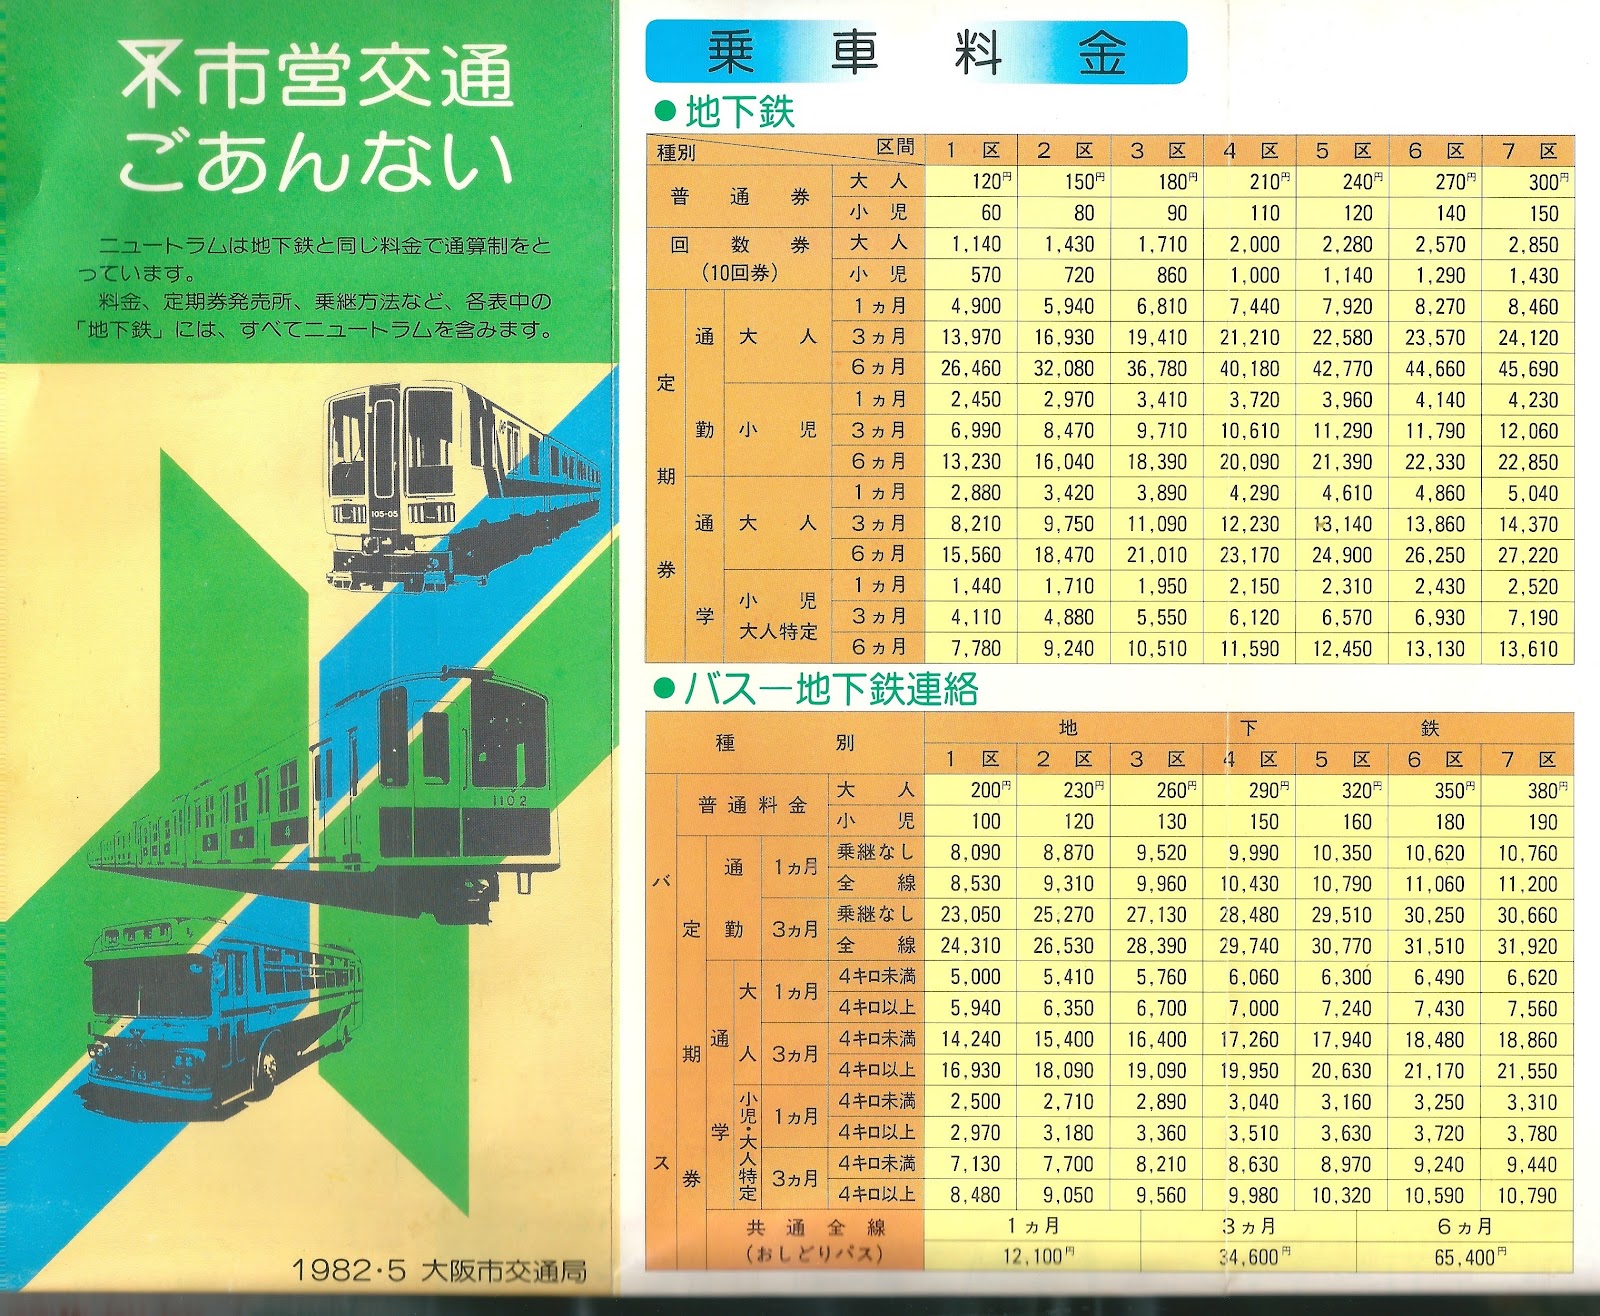 散歩なう: メモ大阪市営交通 1982年の路線図